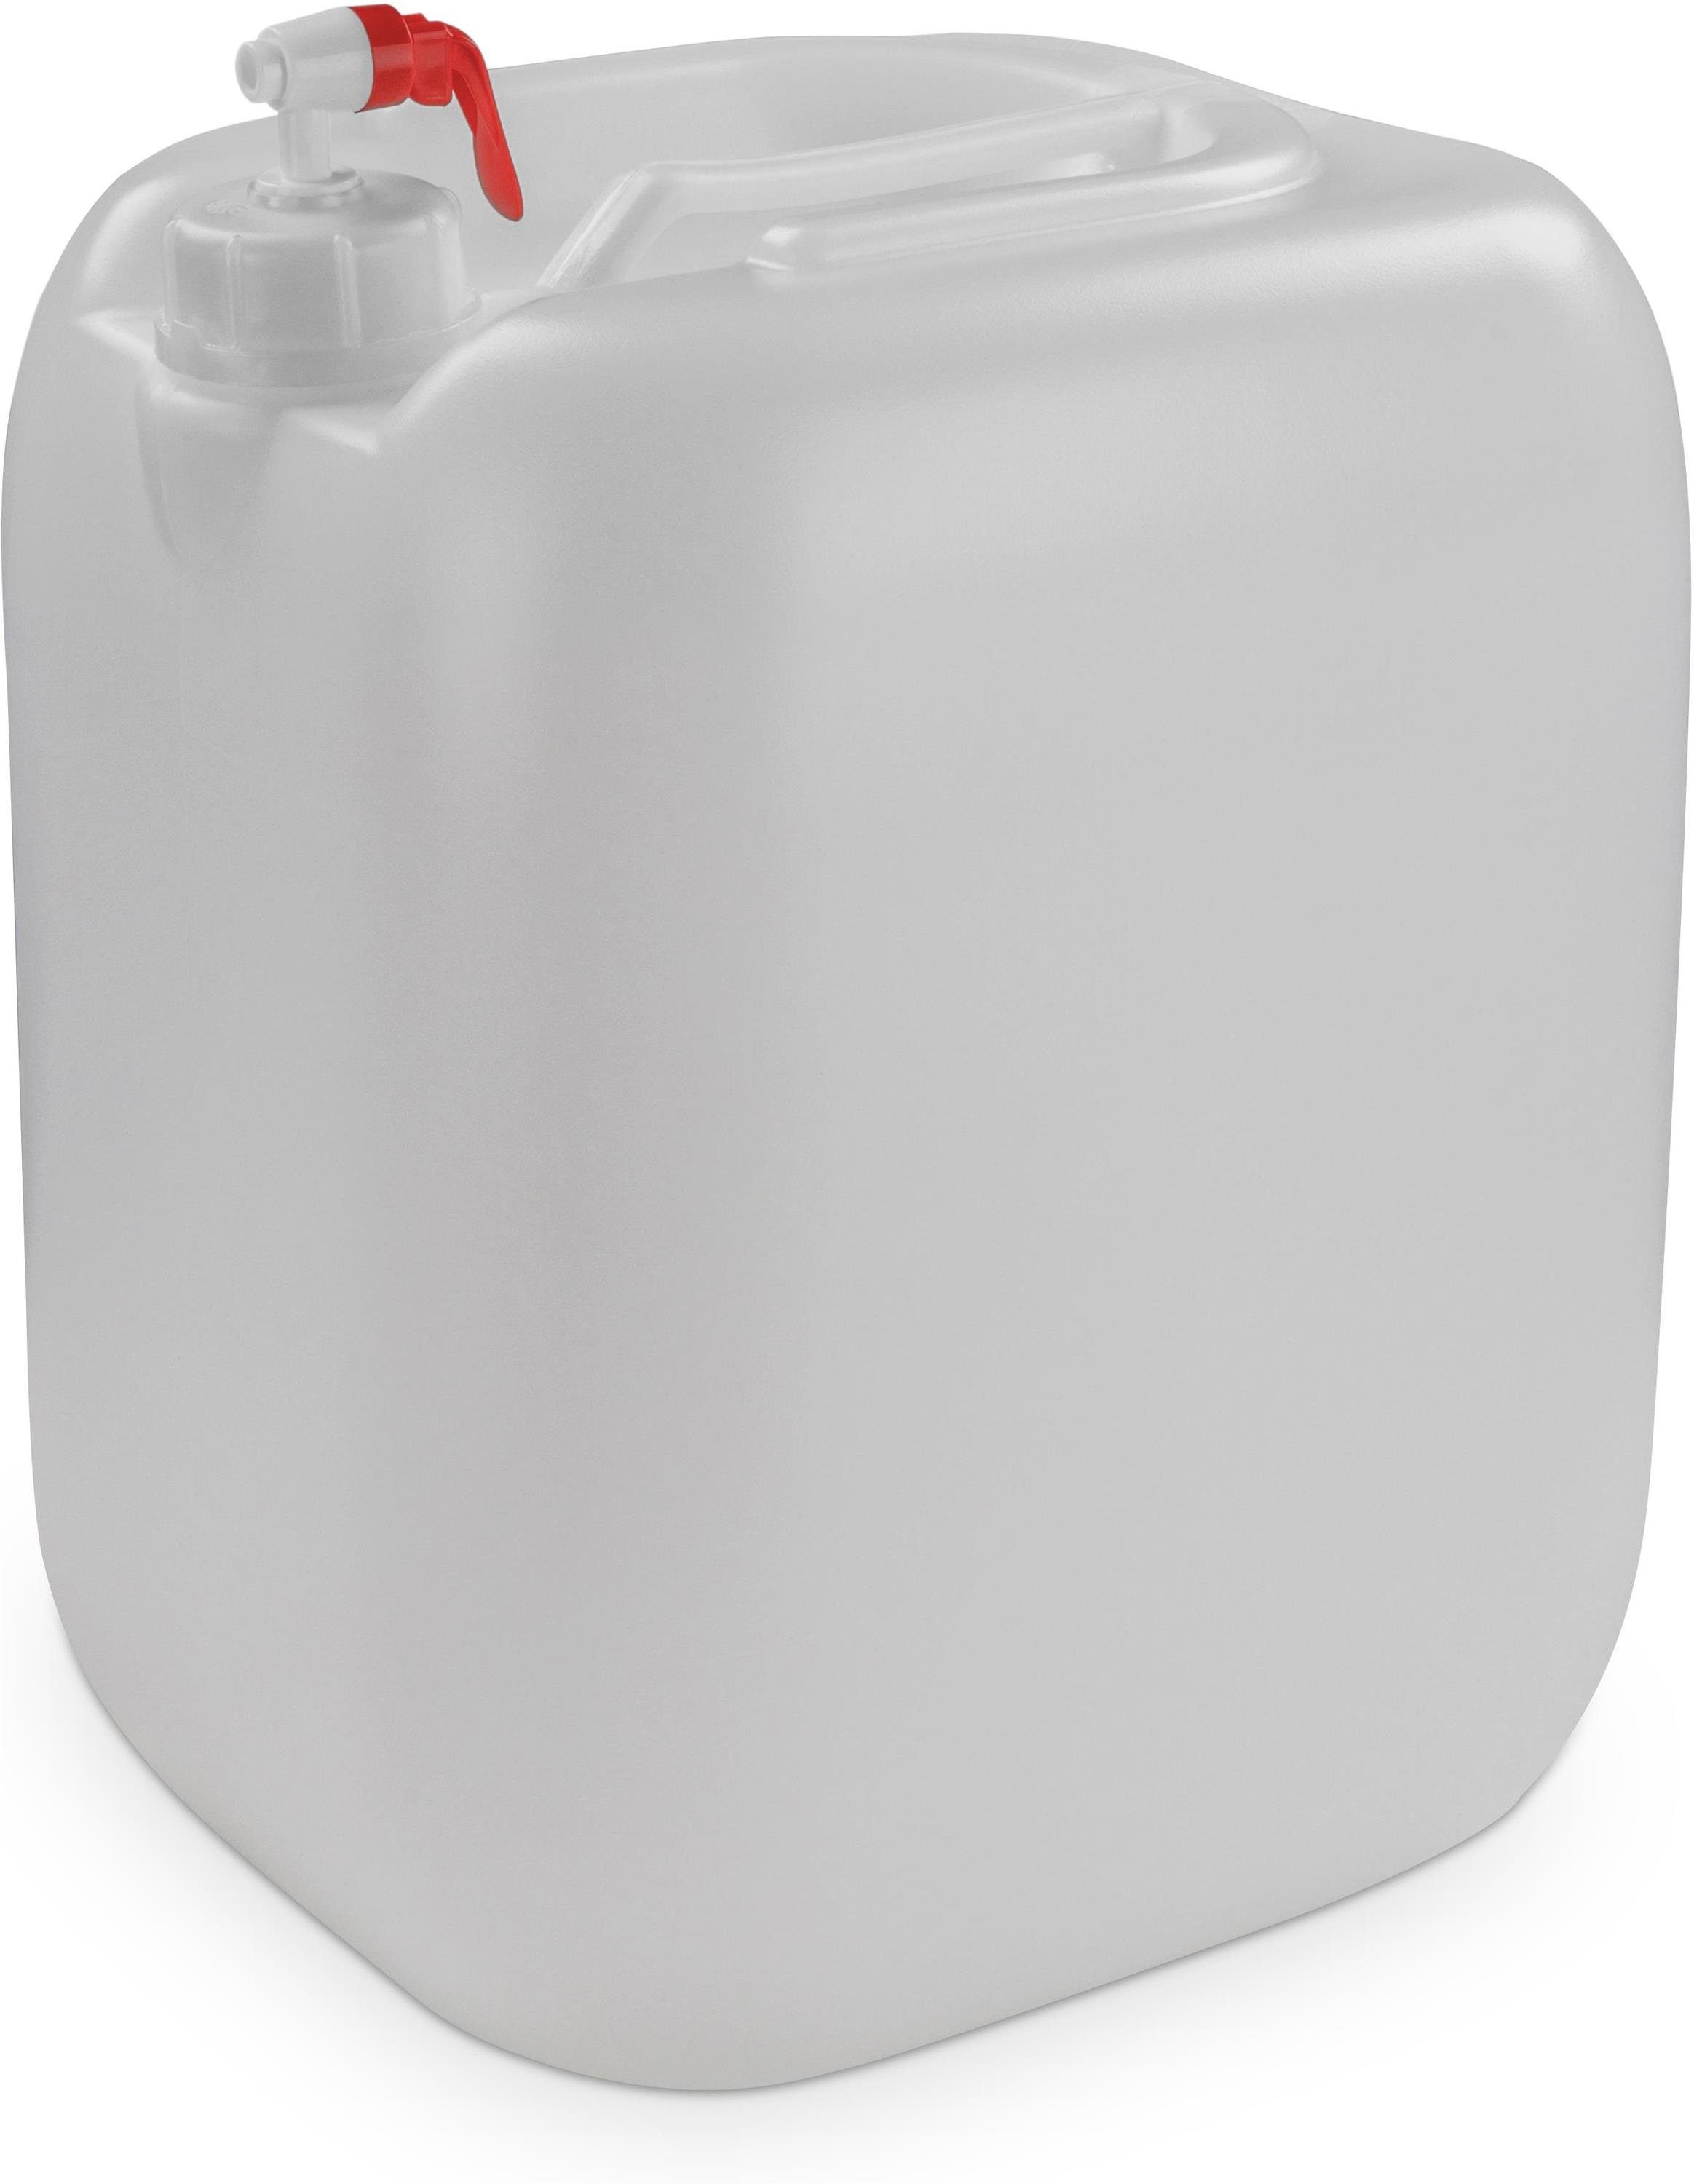 normani® Wasserkanister 15 Liter Dispenser